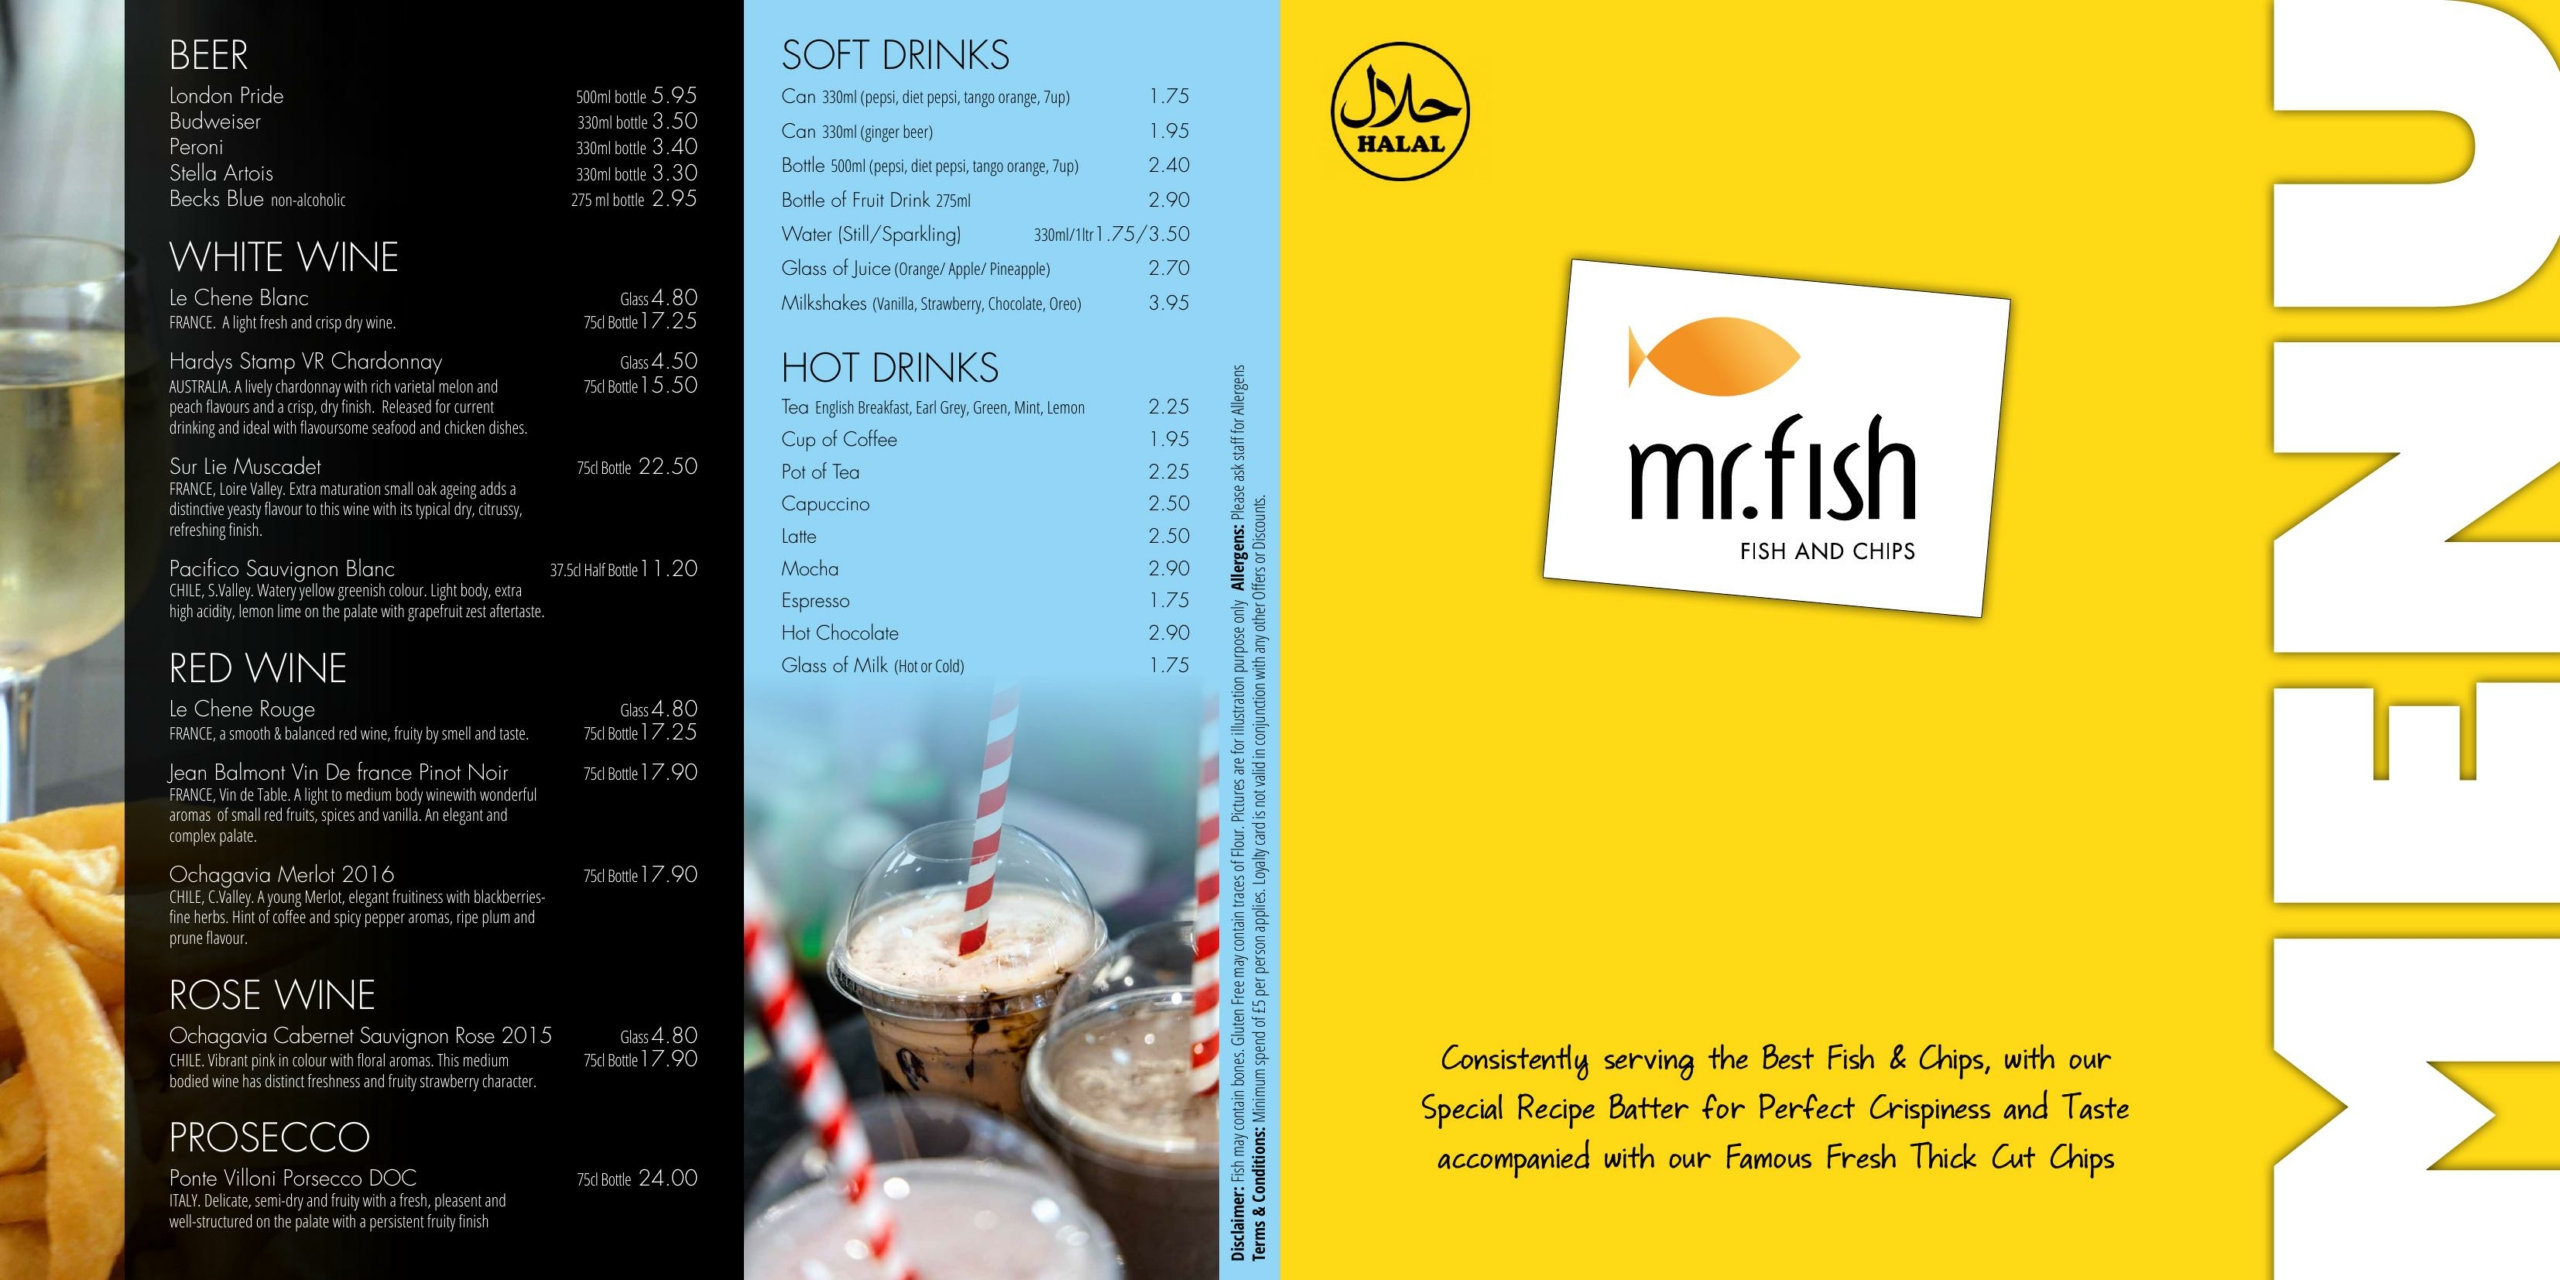 Mr. Fish – fish and chips - main menu